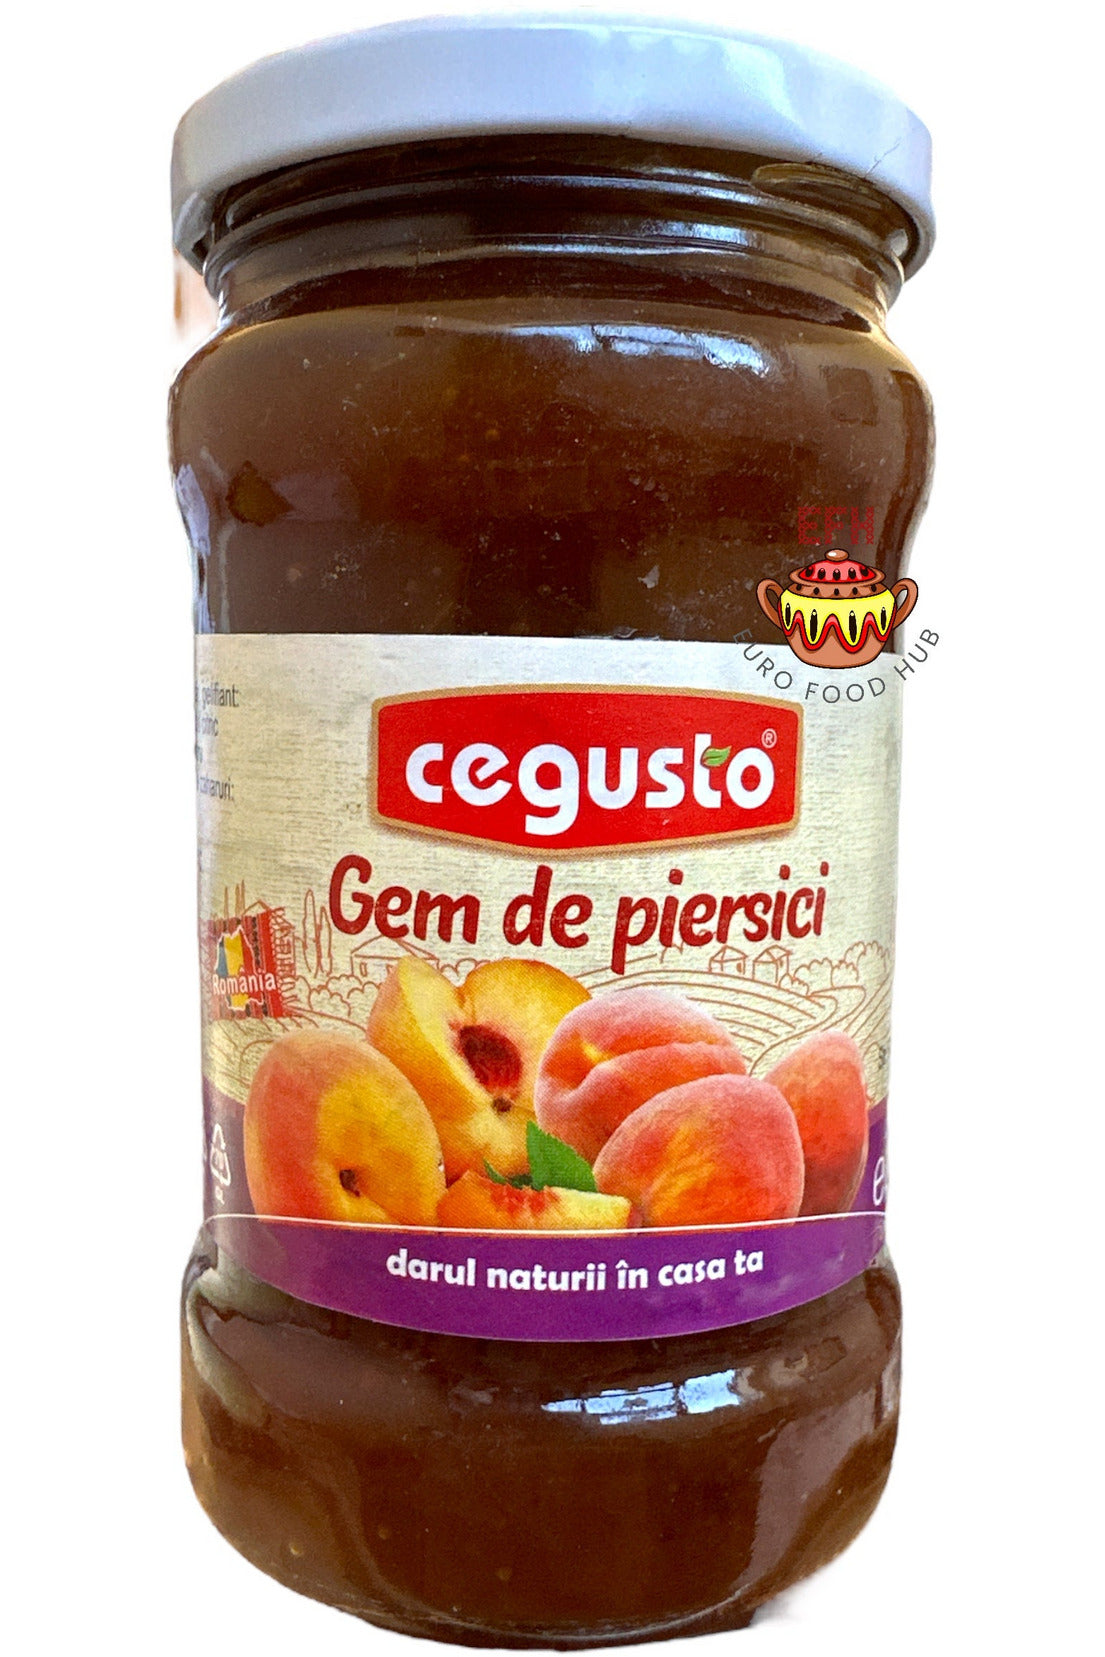 Peach Jam - Cegusto - Gem de Piersici